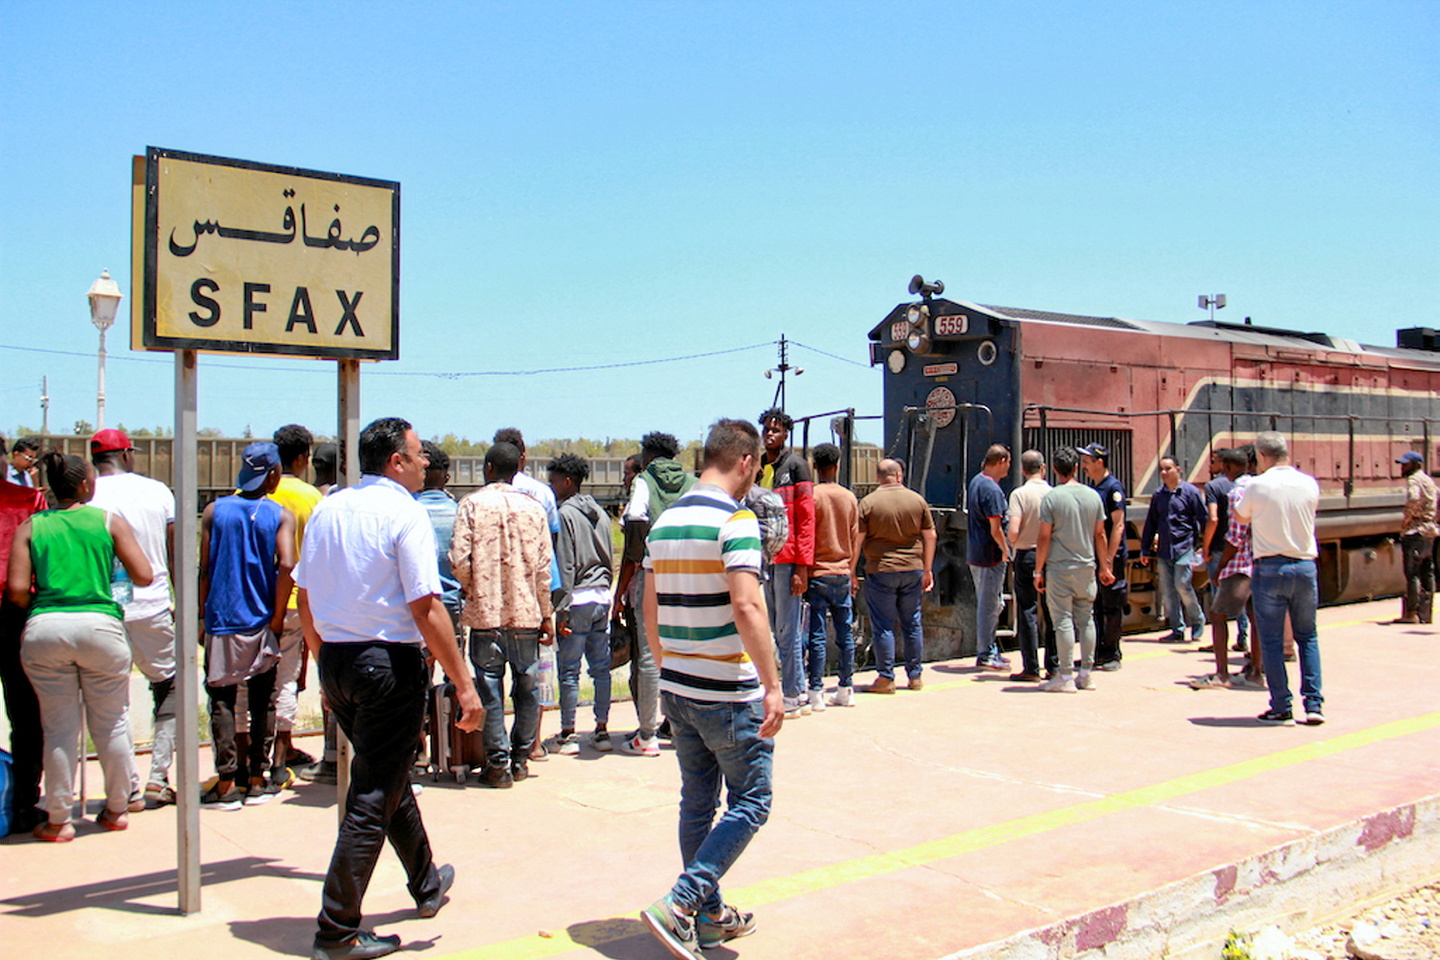 TUNISIE – Des Subsahariens expulsés de Sfax vers le désert